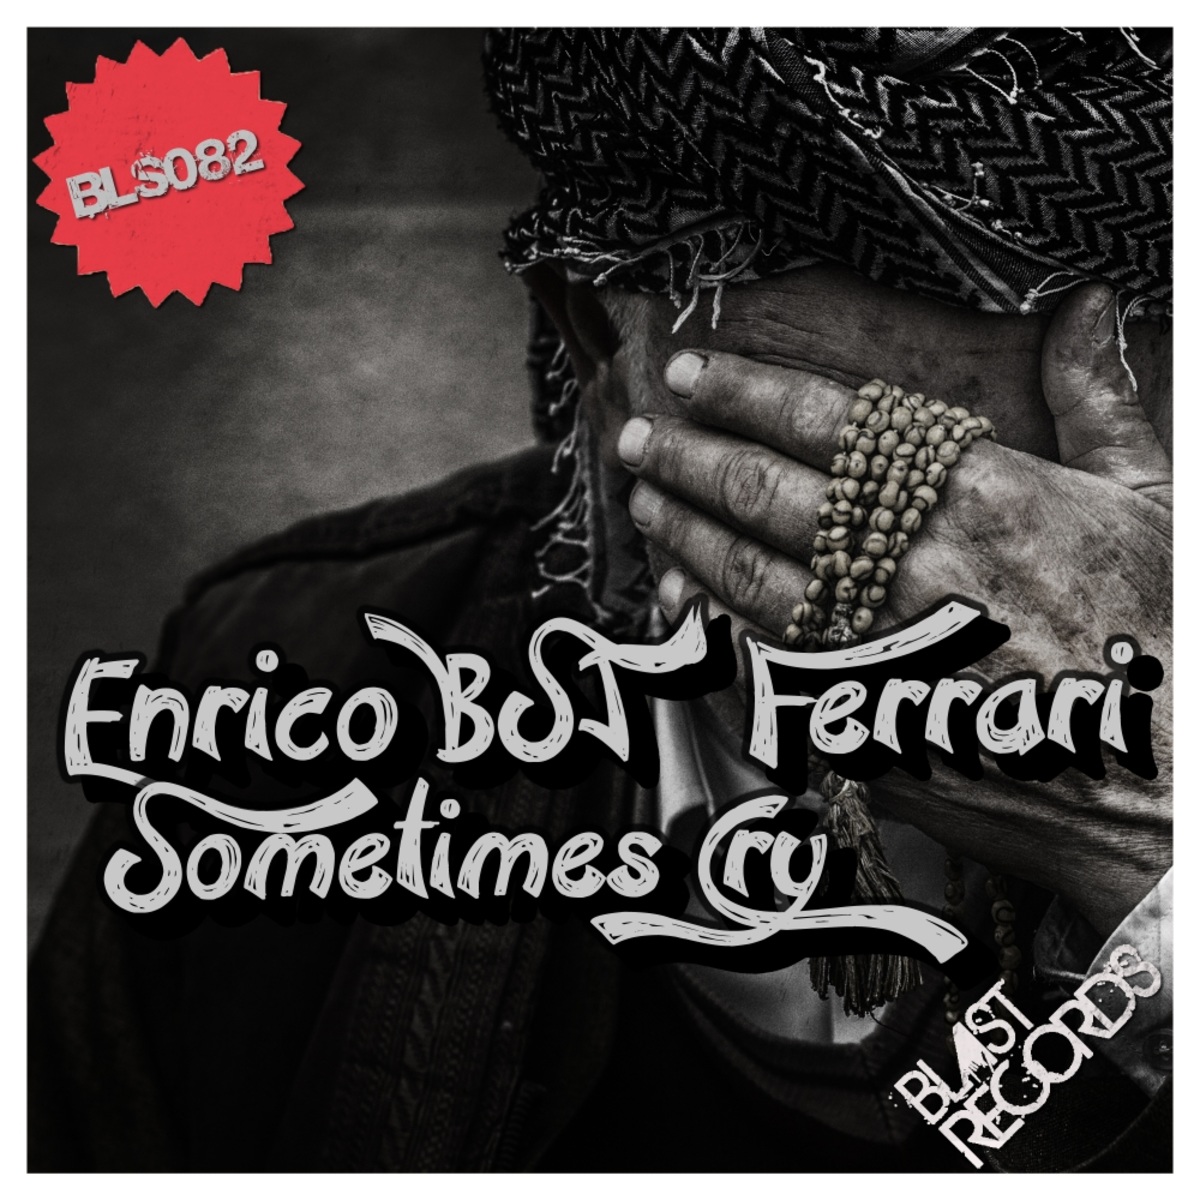 Enrico BSJ Ferrari - Sometimes Cry / Blast Records